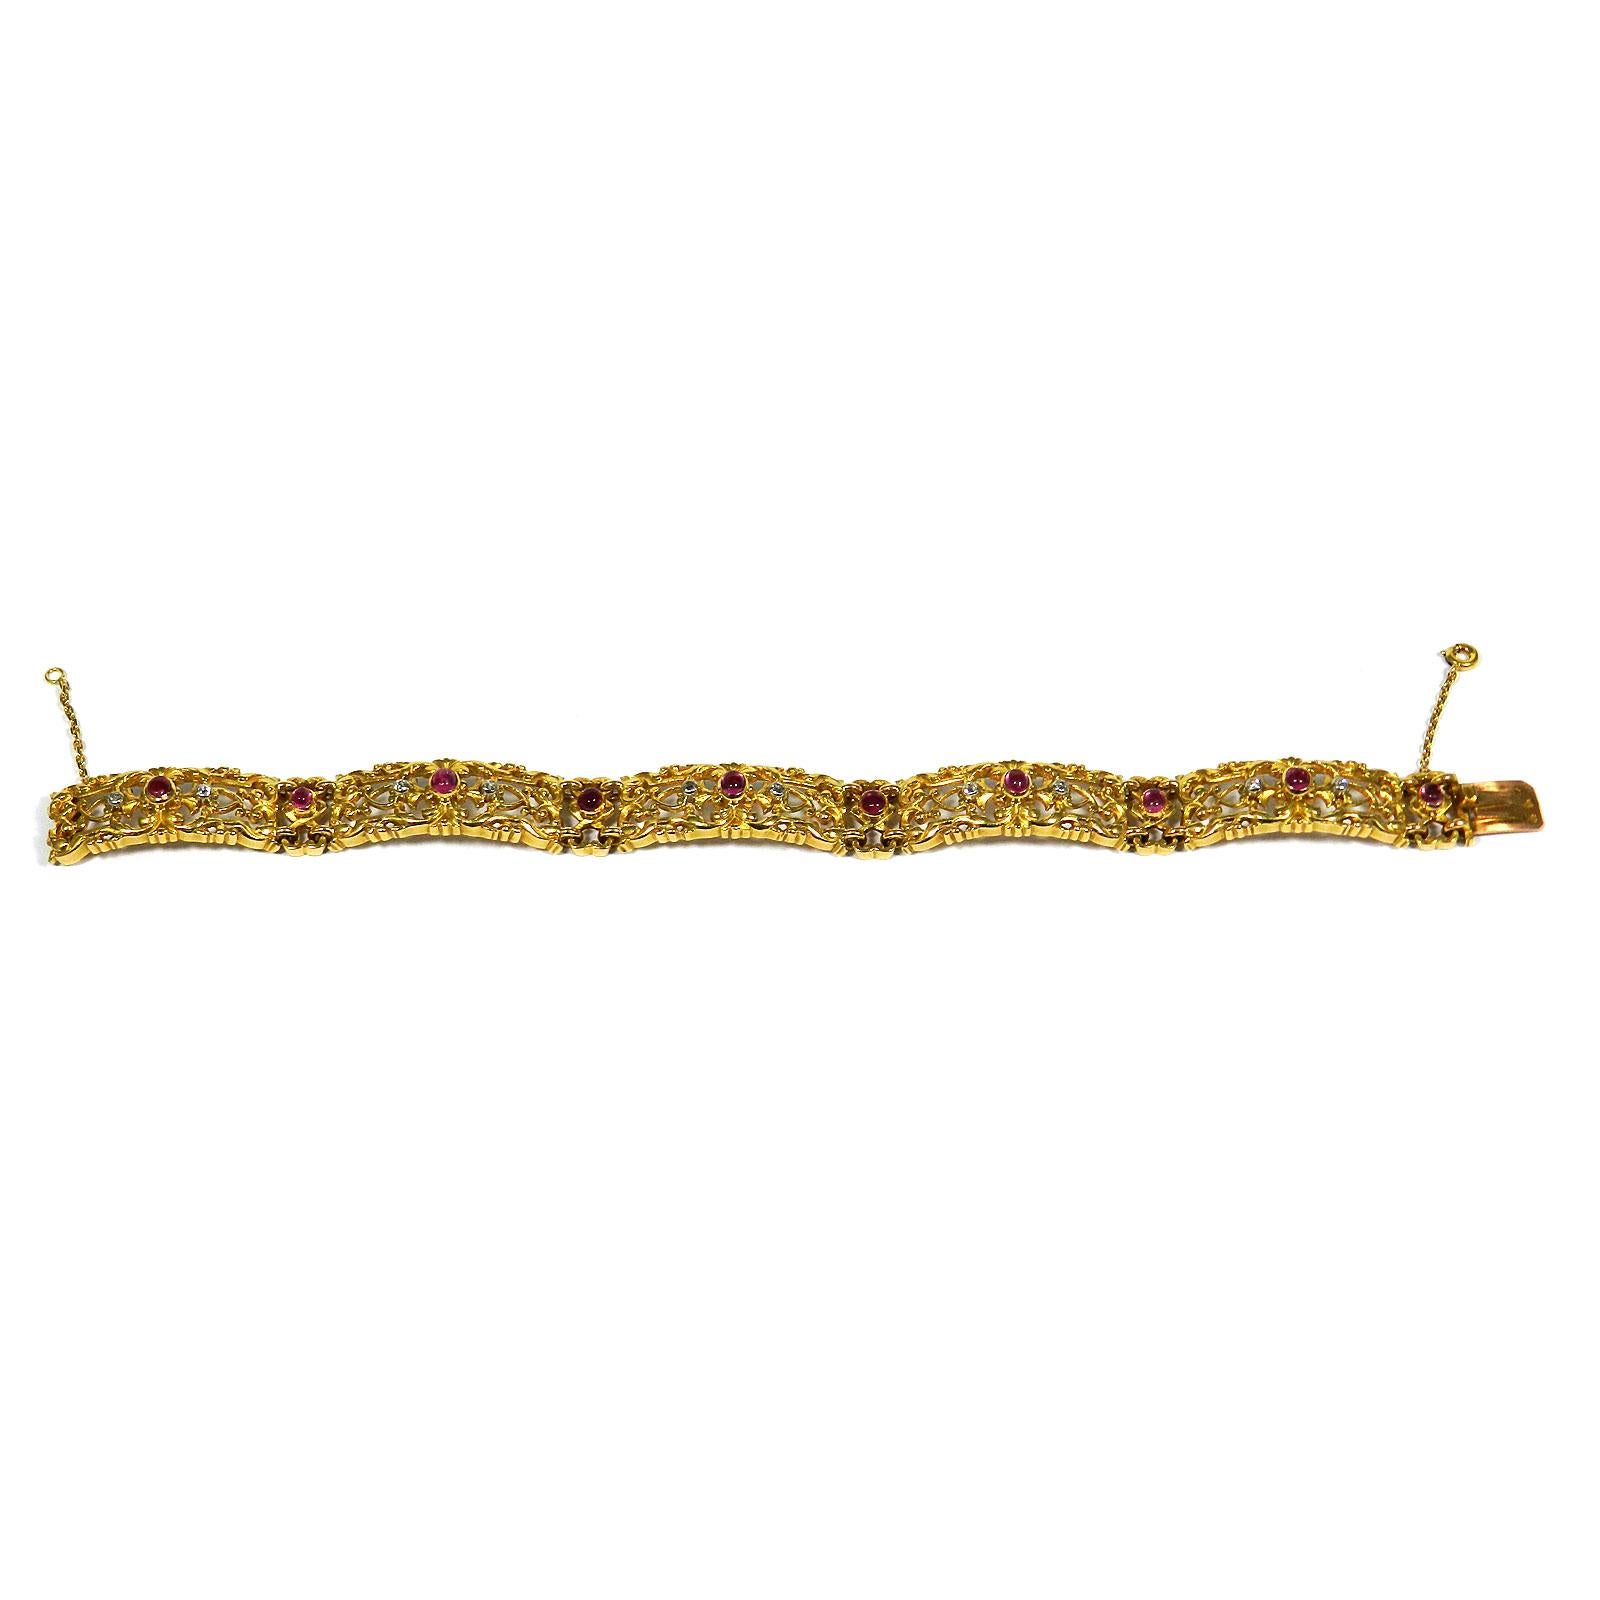 Jugendstil-Rubin-Diamant-Armband aus 18 Karat Gold, Paris um 1890

Dieses sehr dekorative Goldarmband besteht aus massiven, durchbrochenen, floralen und fein ziselierten Gliedern, die mit 10 leuchtend roten Rubin-Cabochons und Diamanten im